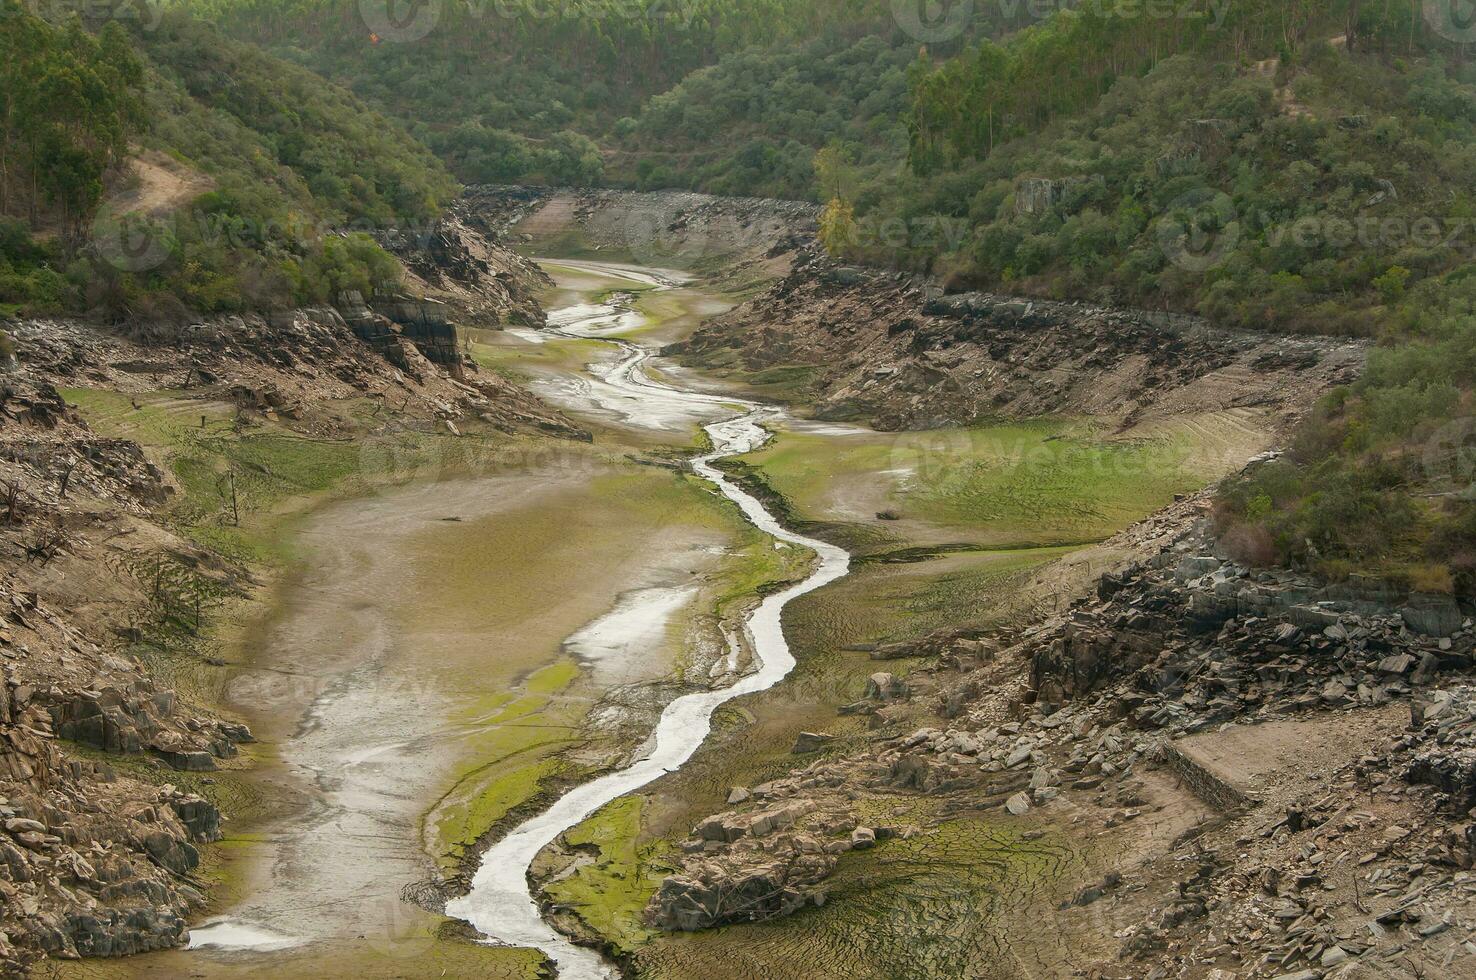 de ponsul flod är en förmögen av de tejo flod, i Portugal, och är en mycket stor flod. på detta tid den är helt och hållet torr, utan vatten och med dess säng knäckt på grund av till klimat förändra foto